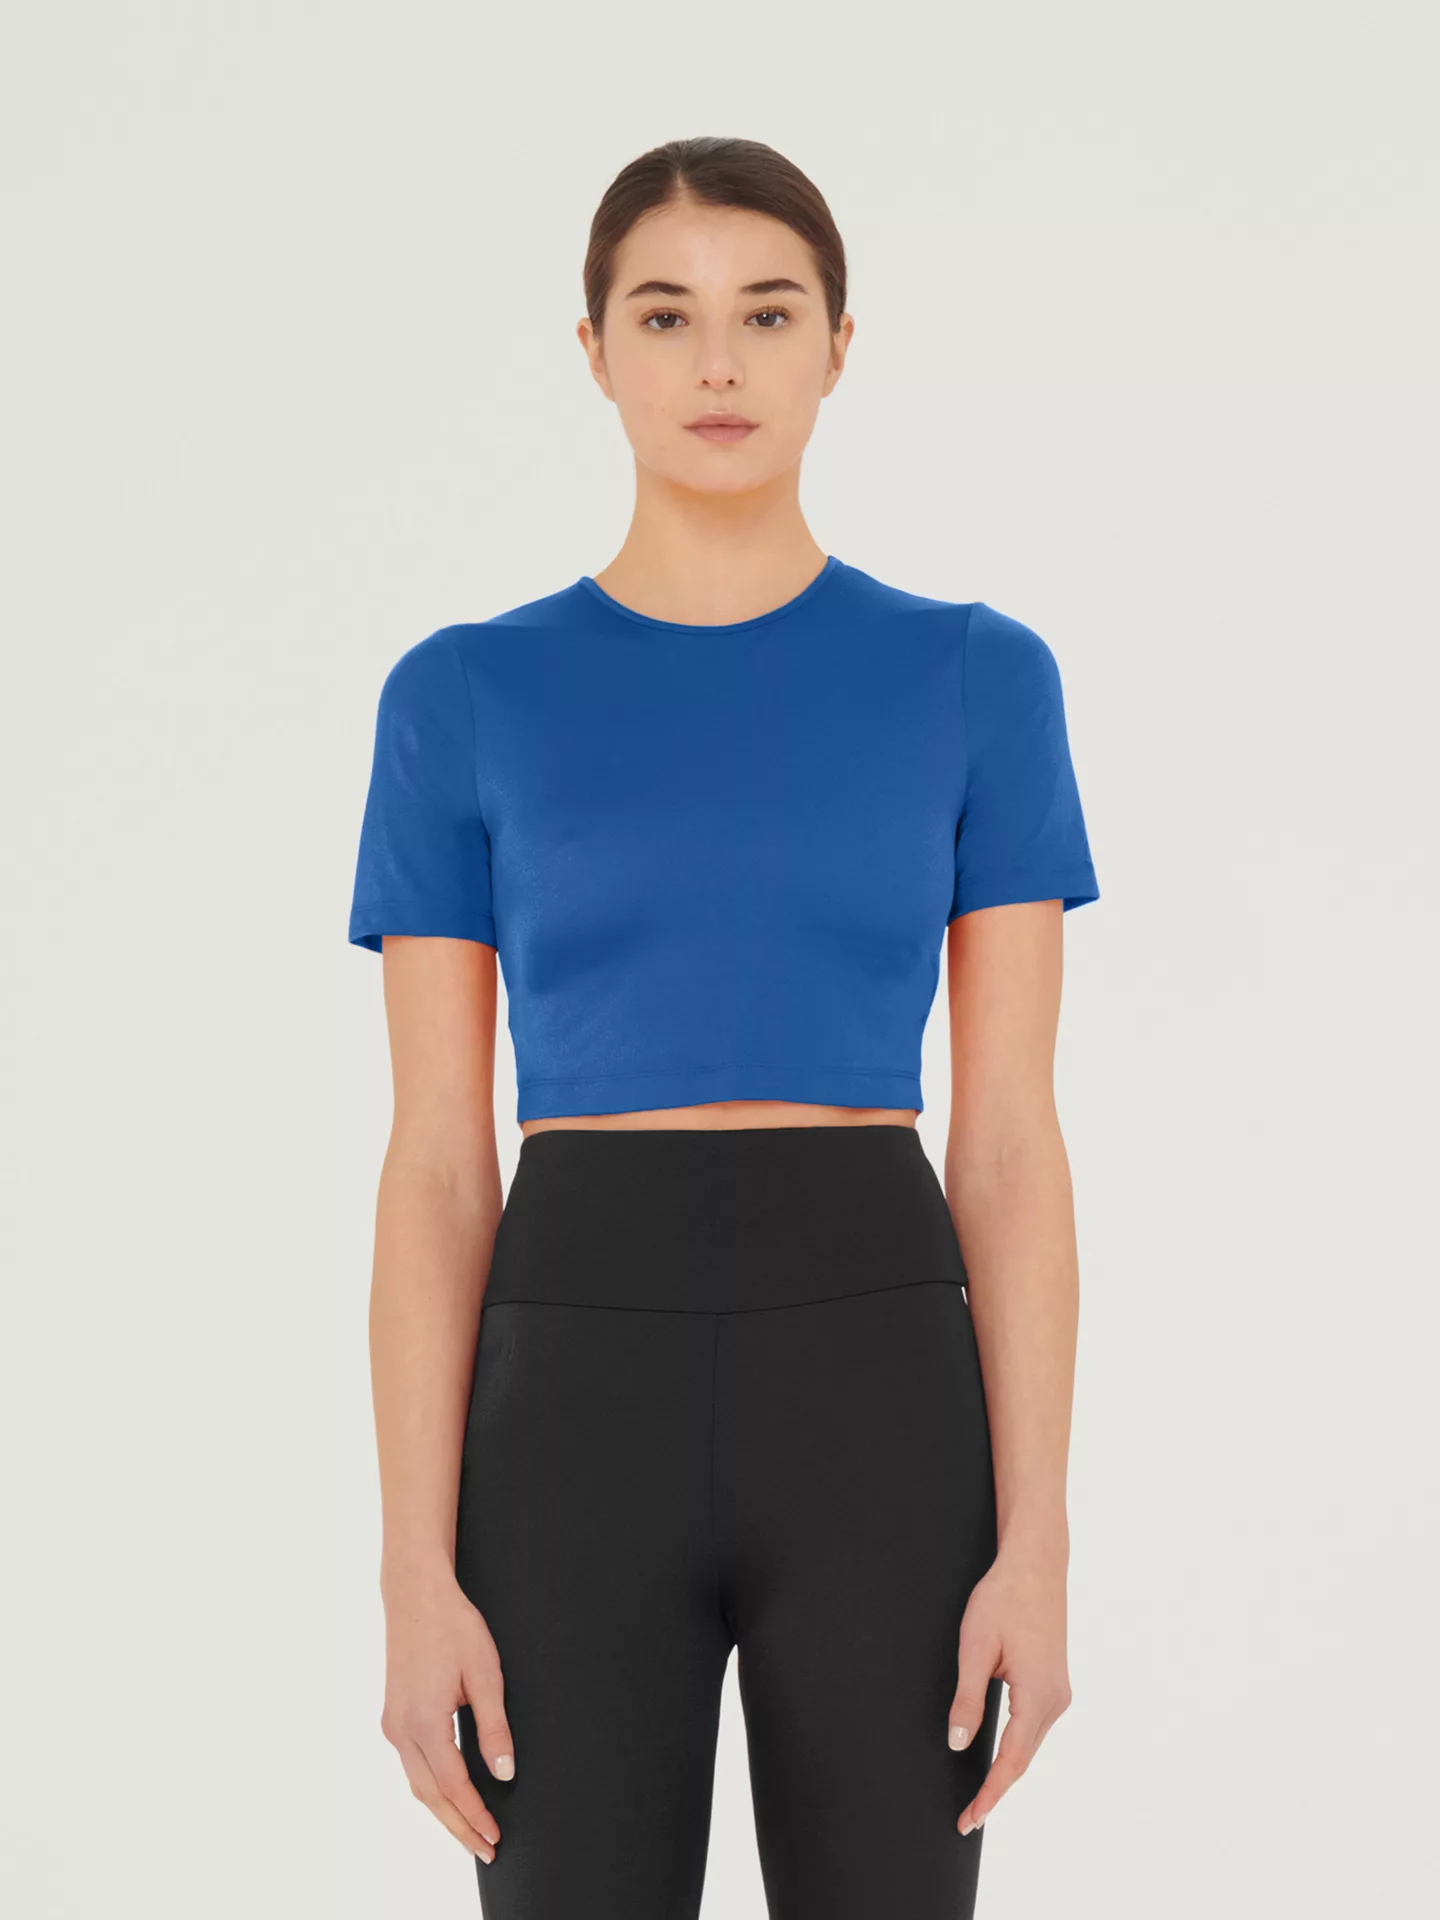 Wolford - The Workout Top Short Sleeves, Frau, sodalite blue, Größe: S günstig online kaufen